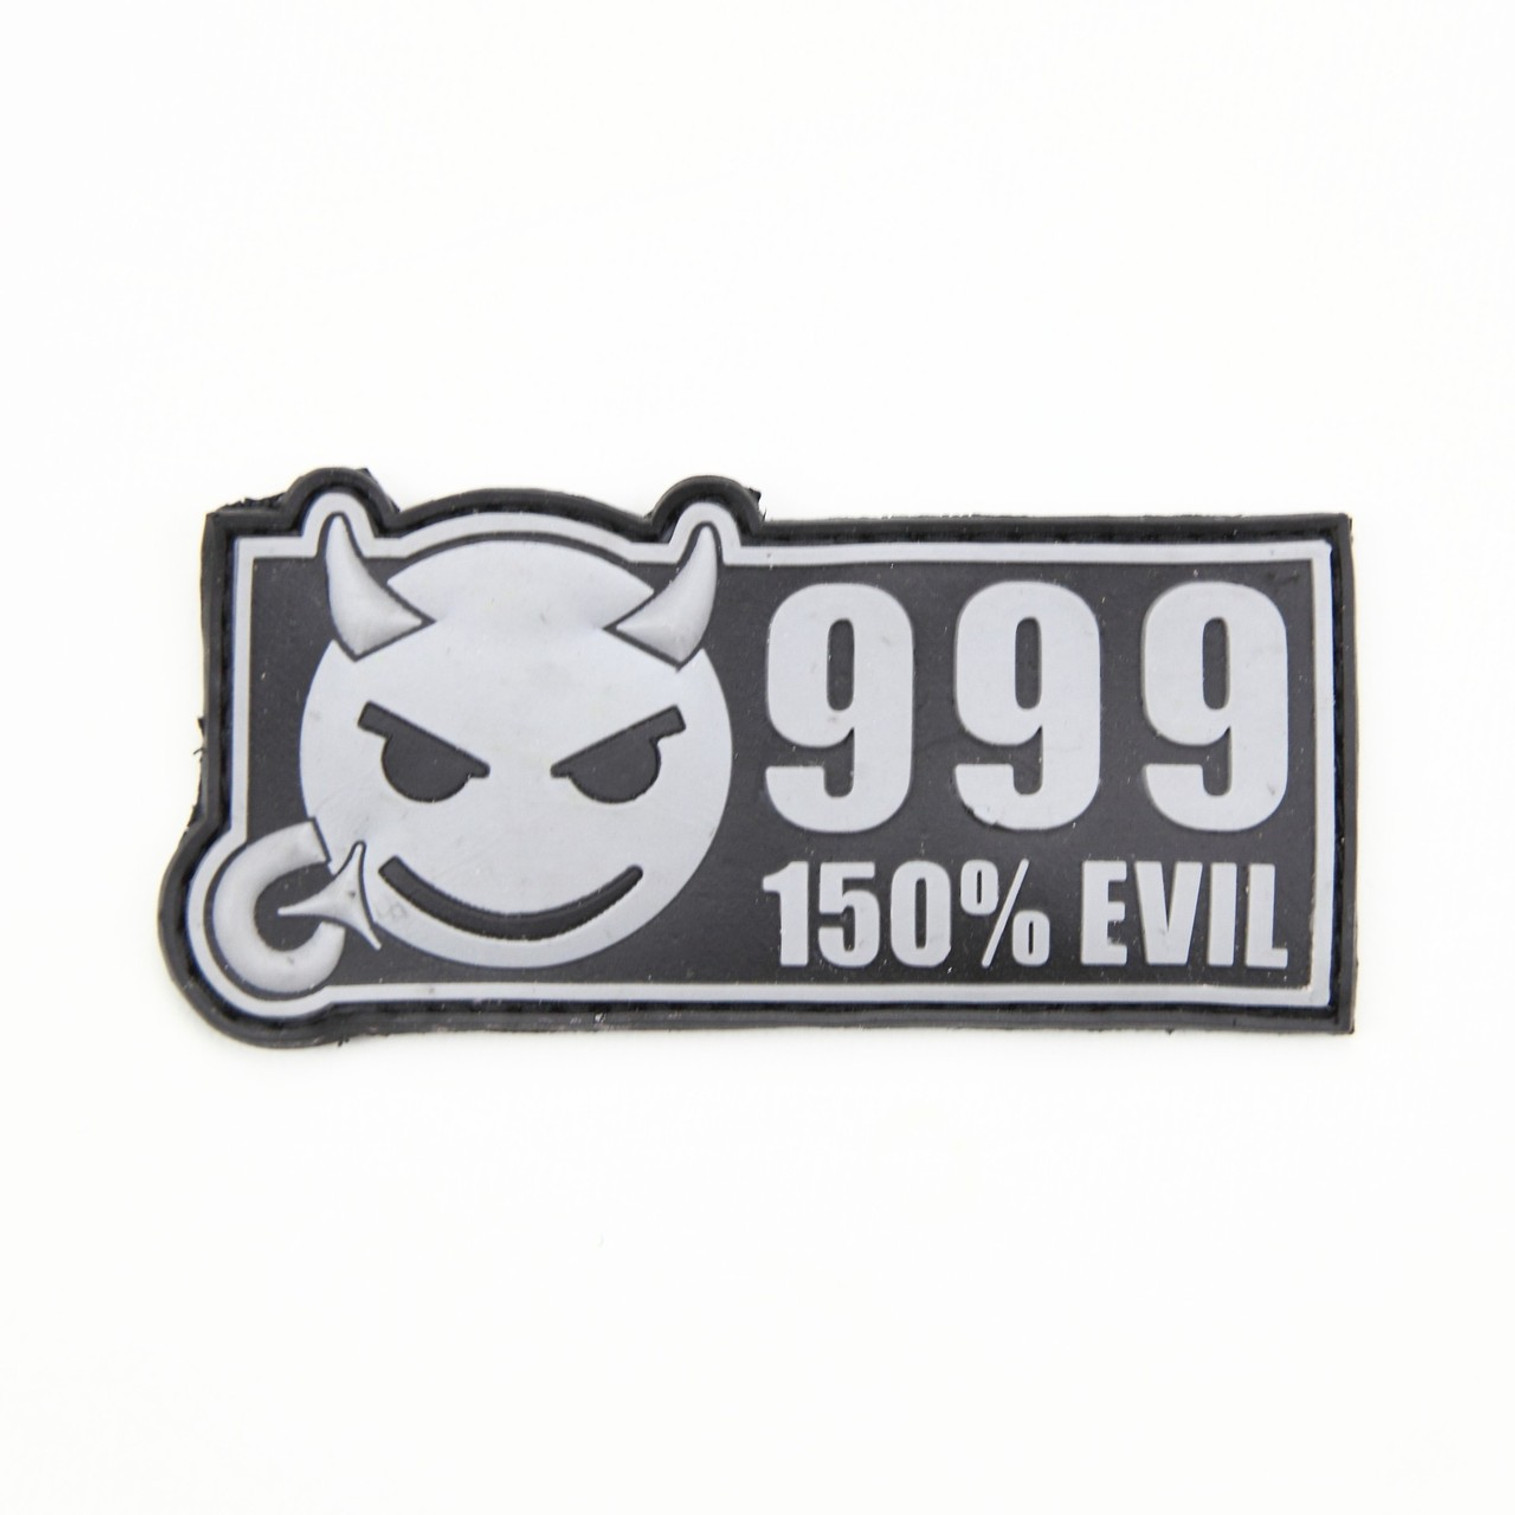 999 150% Evil - Grey - Morale Patch